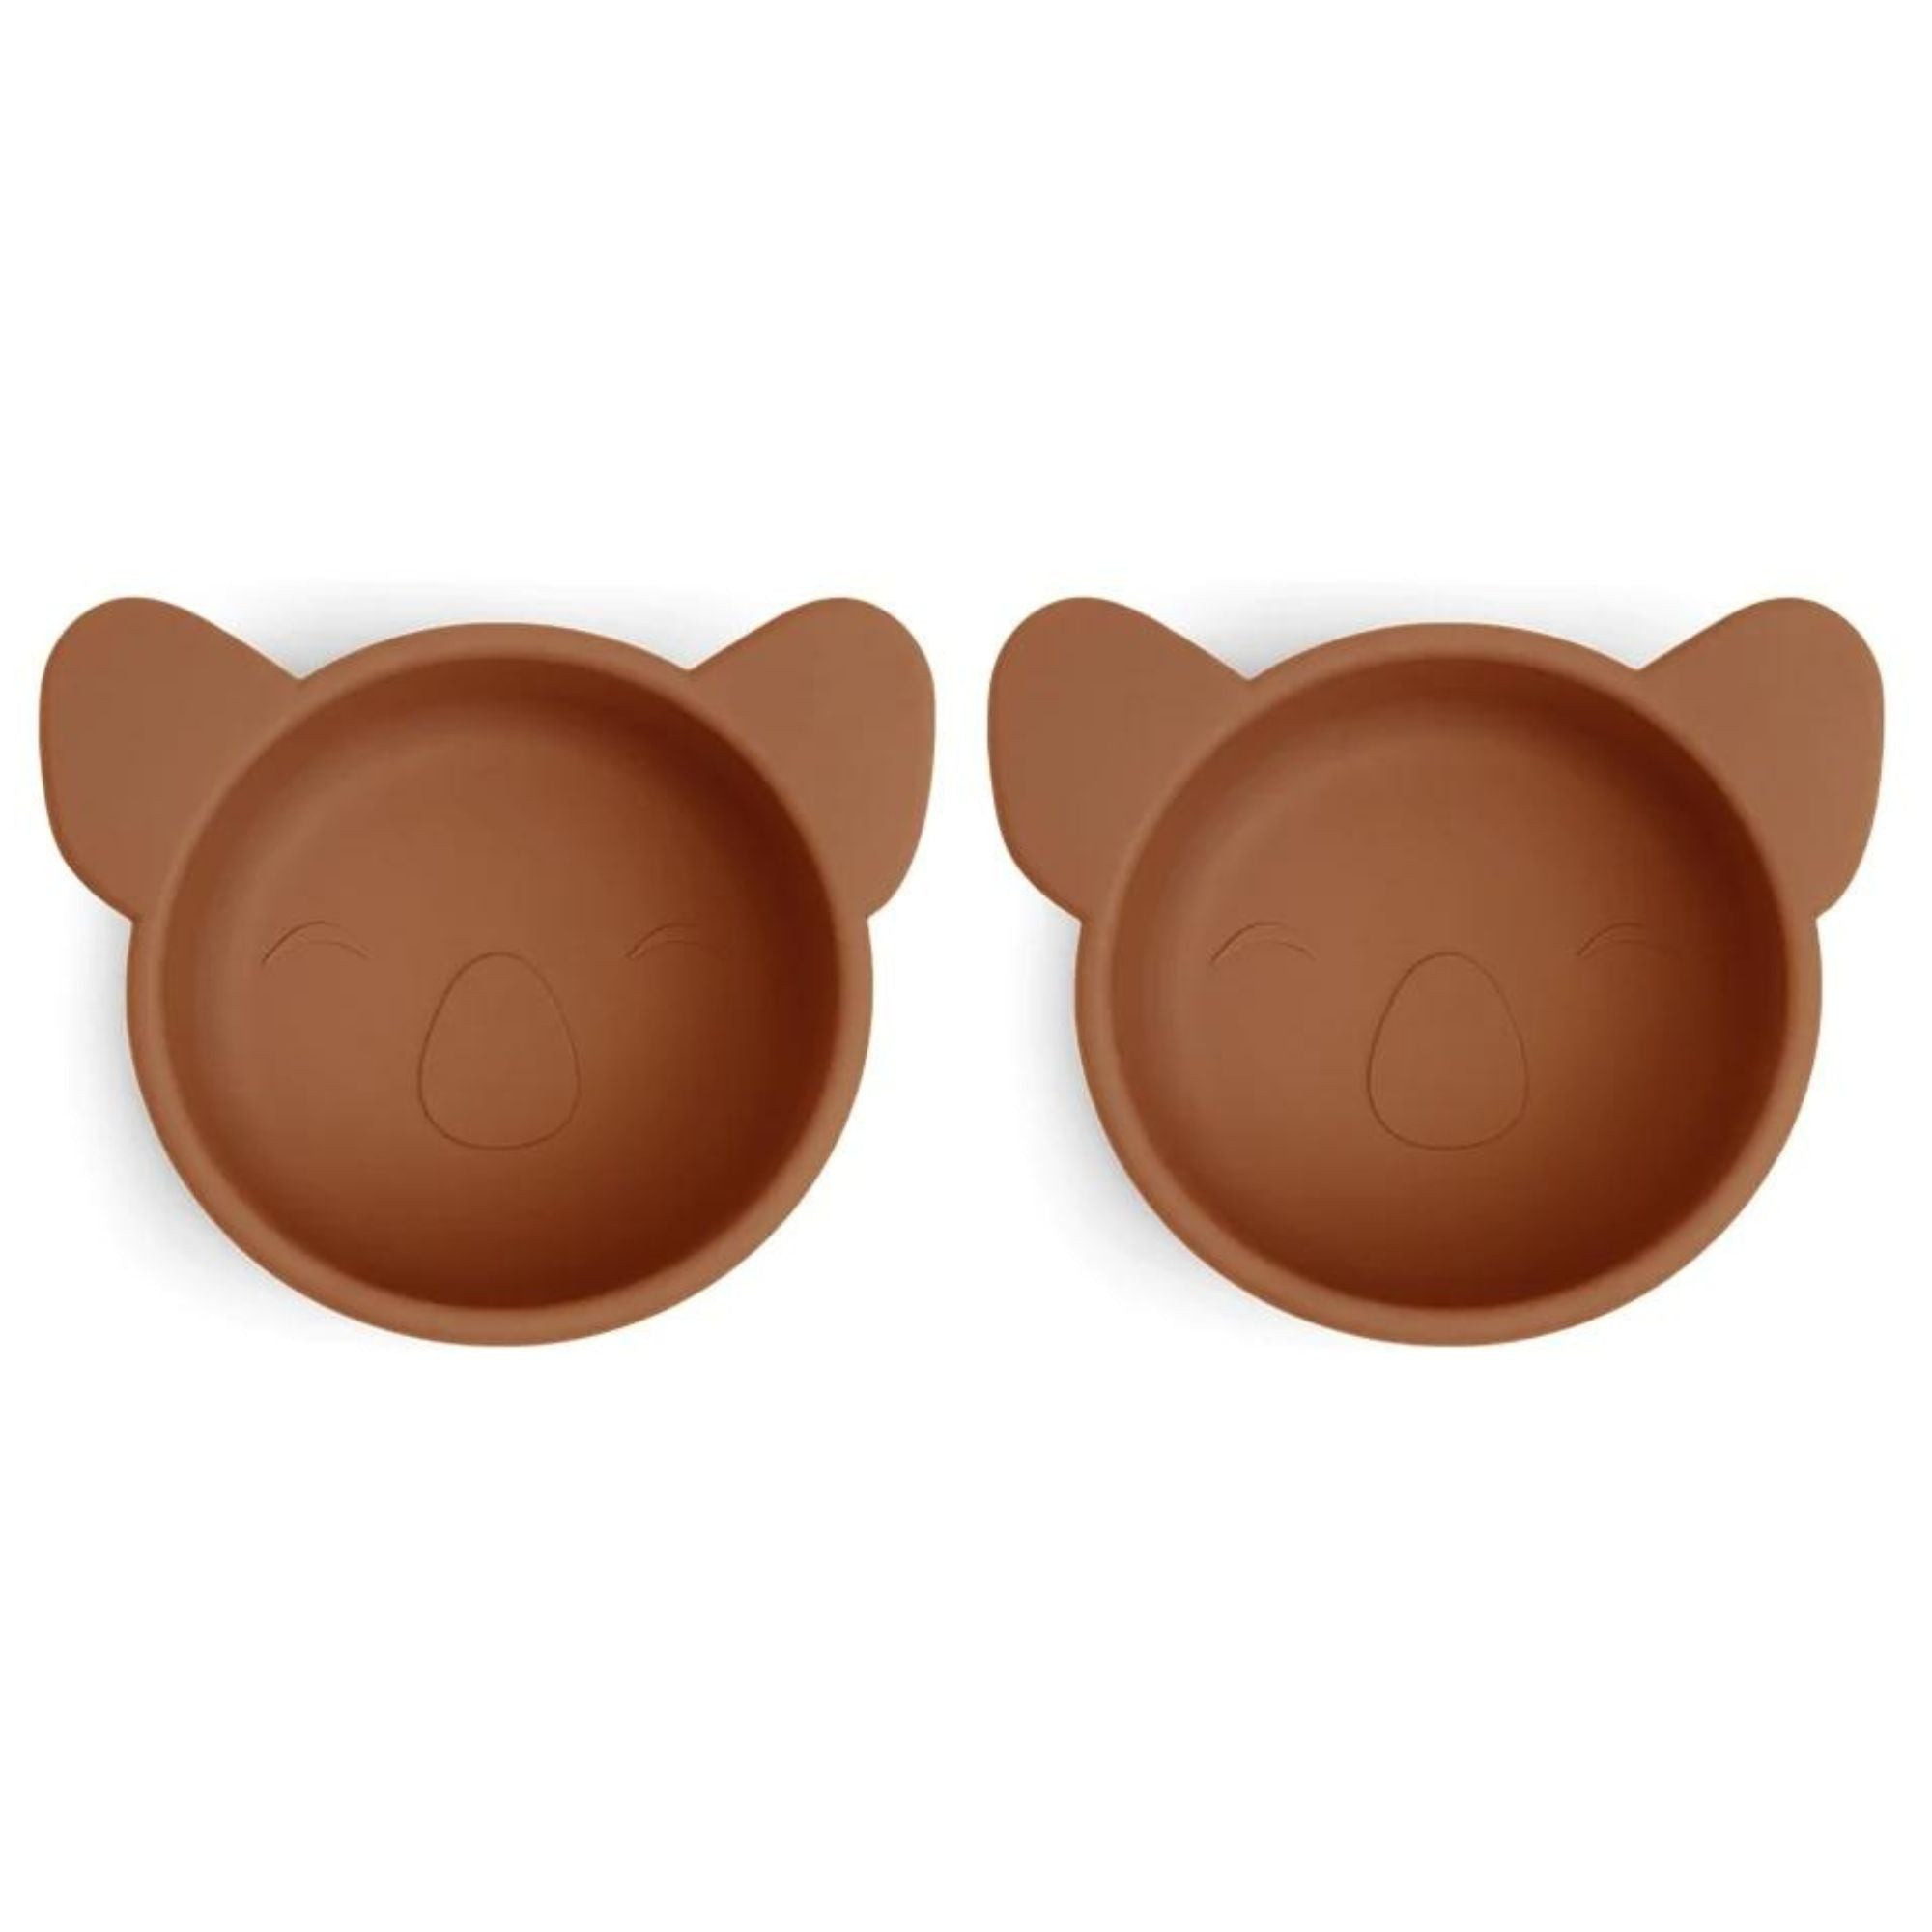 Koala silikoninių 2 dubenėlių rinkinys užkandžiams - Caramel Café - little-goose.com